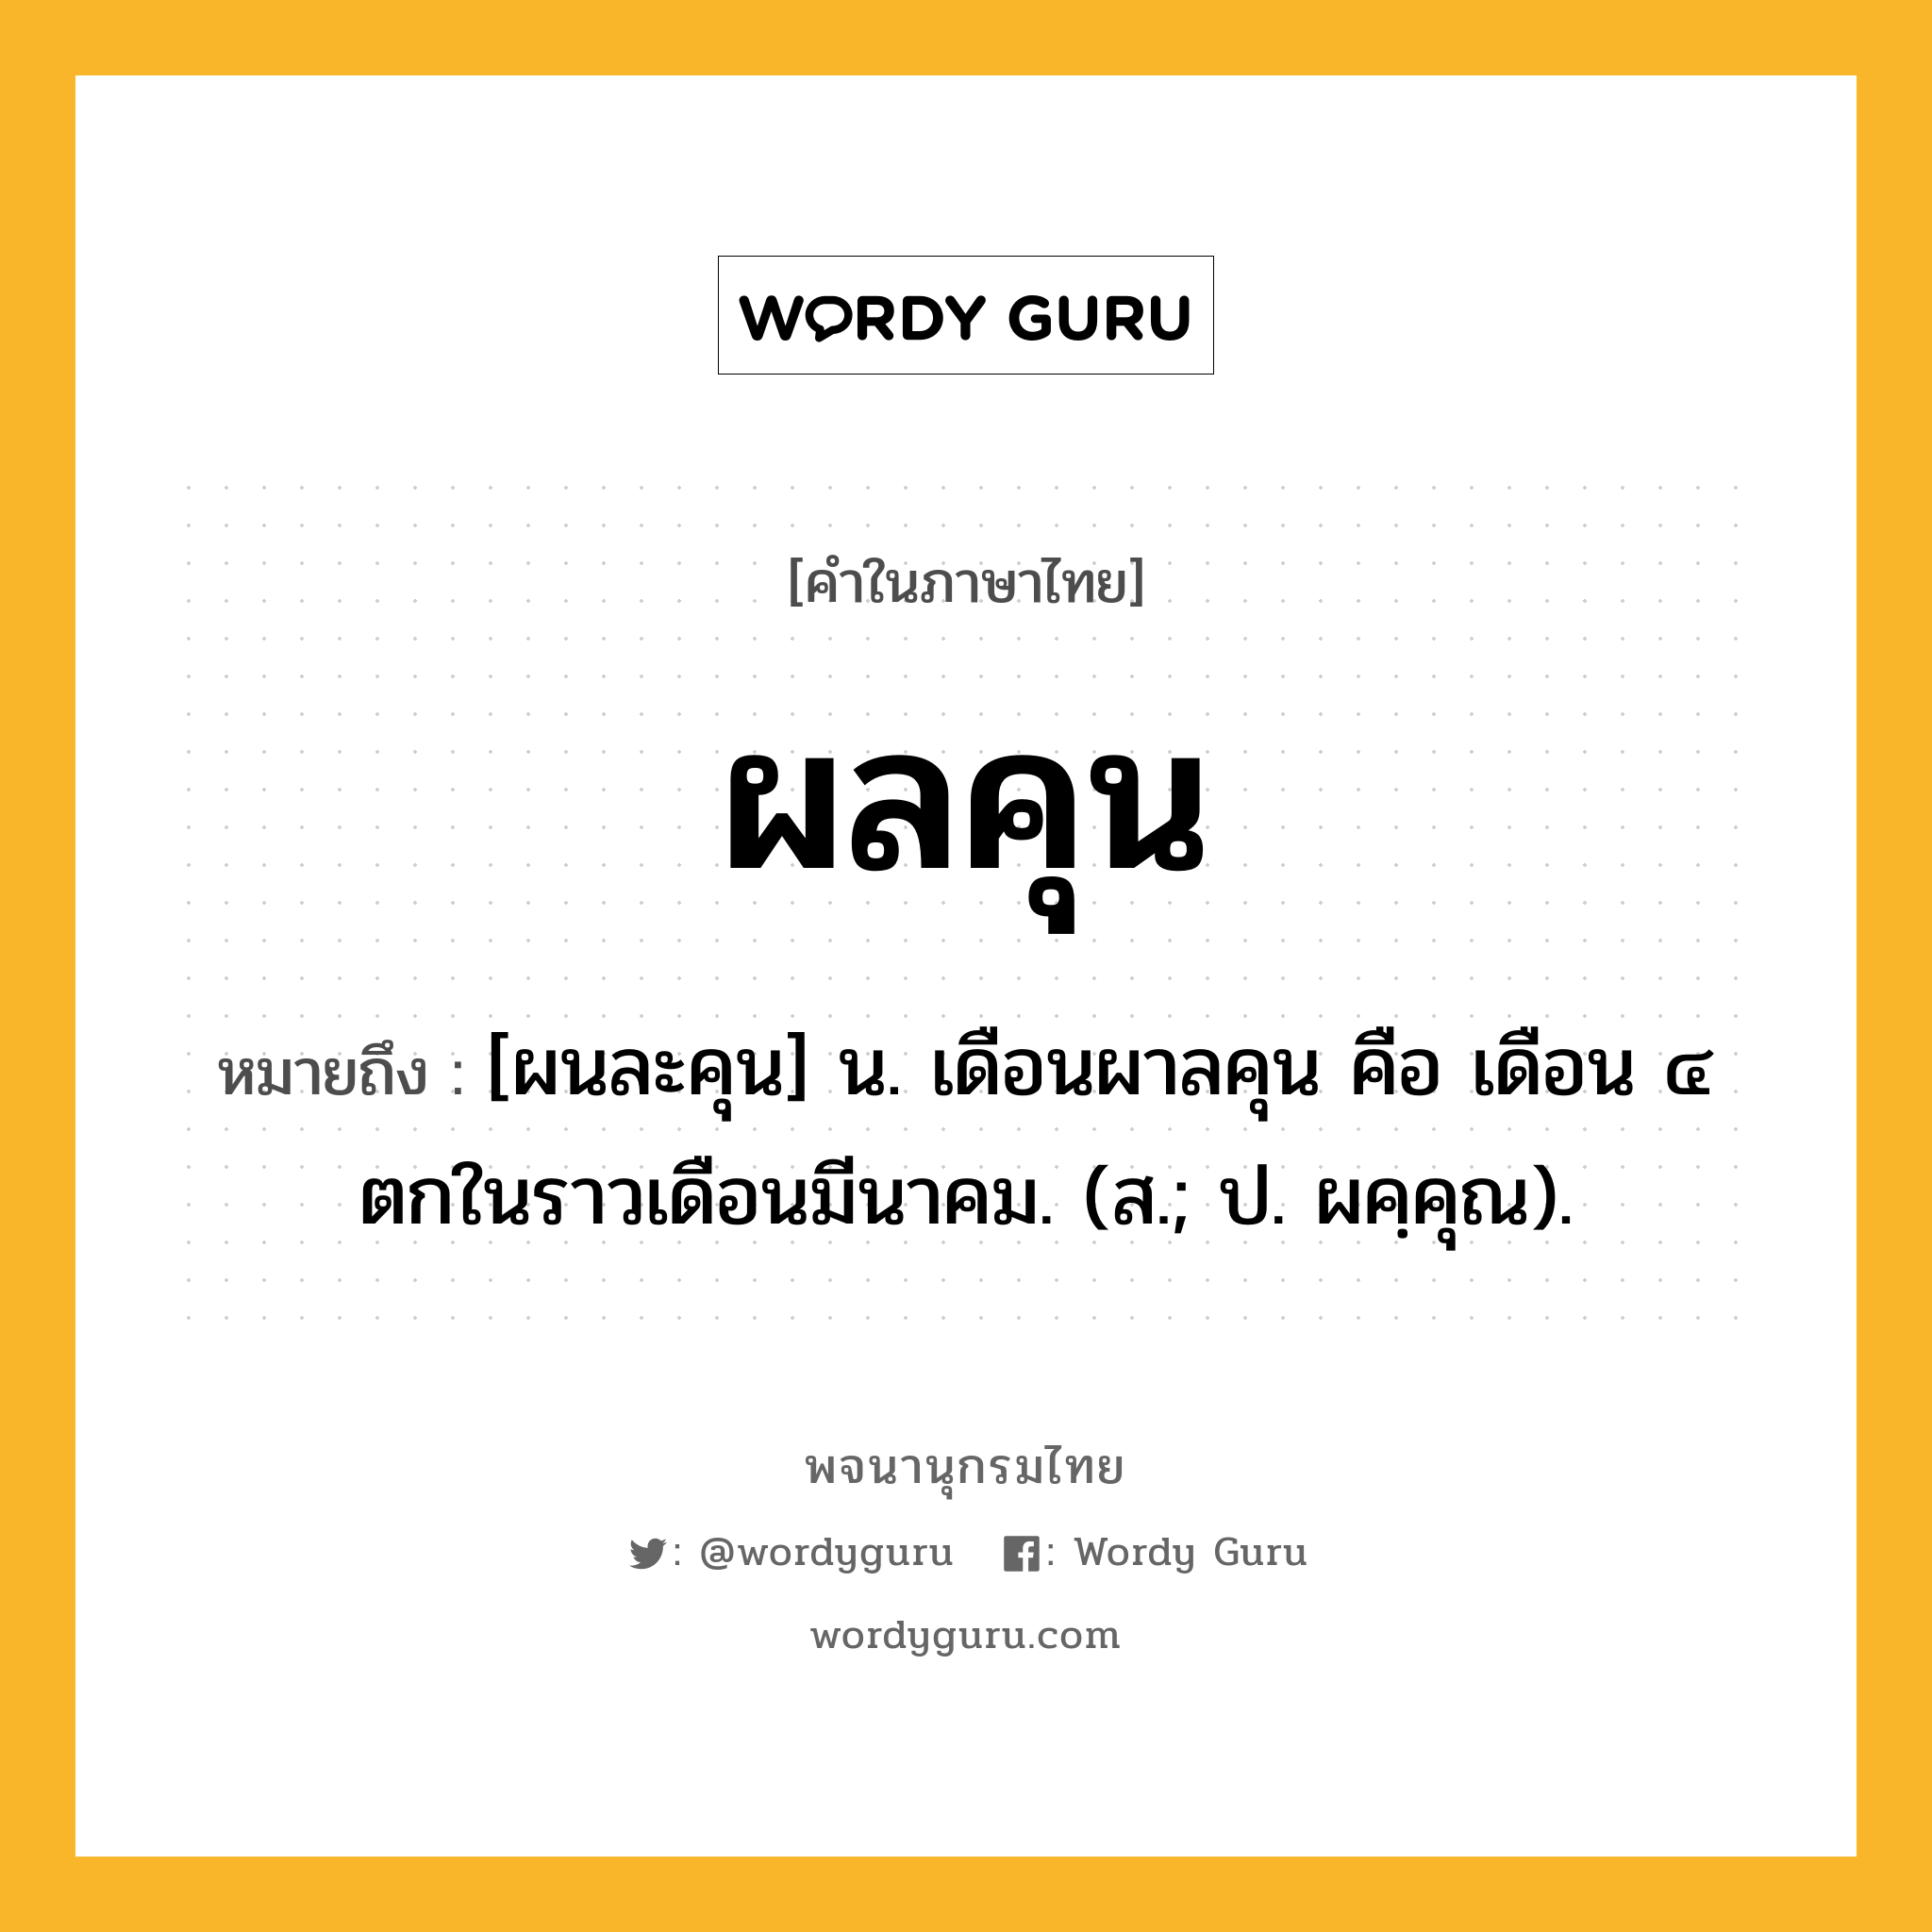 ผลคุน ความหมาย หมายถึงอะไร?, คำในภาษาไทย ผลคุน หมายถึง [ผนละคุน] น. เดือนผาลคุน คือ เดือน ๔ ตกในราวเดือนมีนาคม. (ส.; ป. ผคฺคุณ).